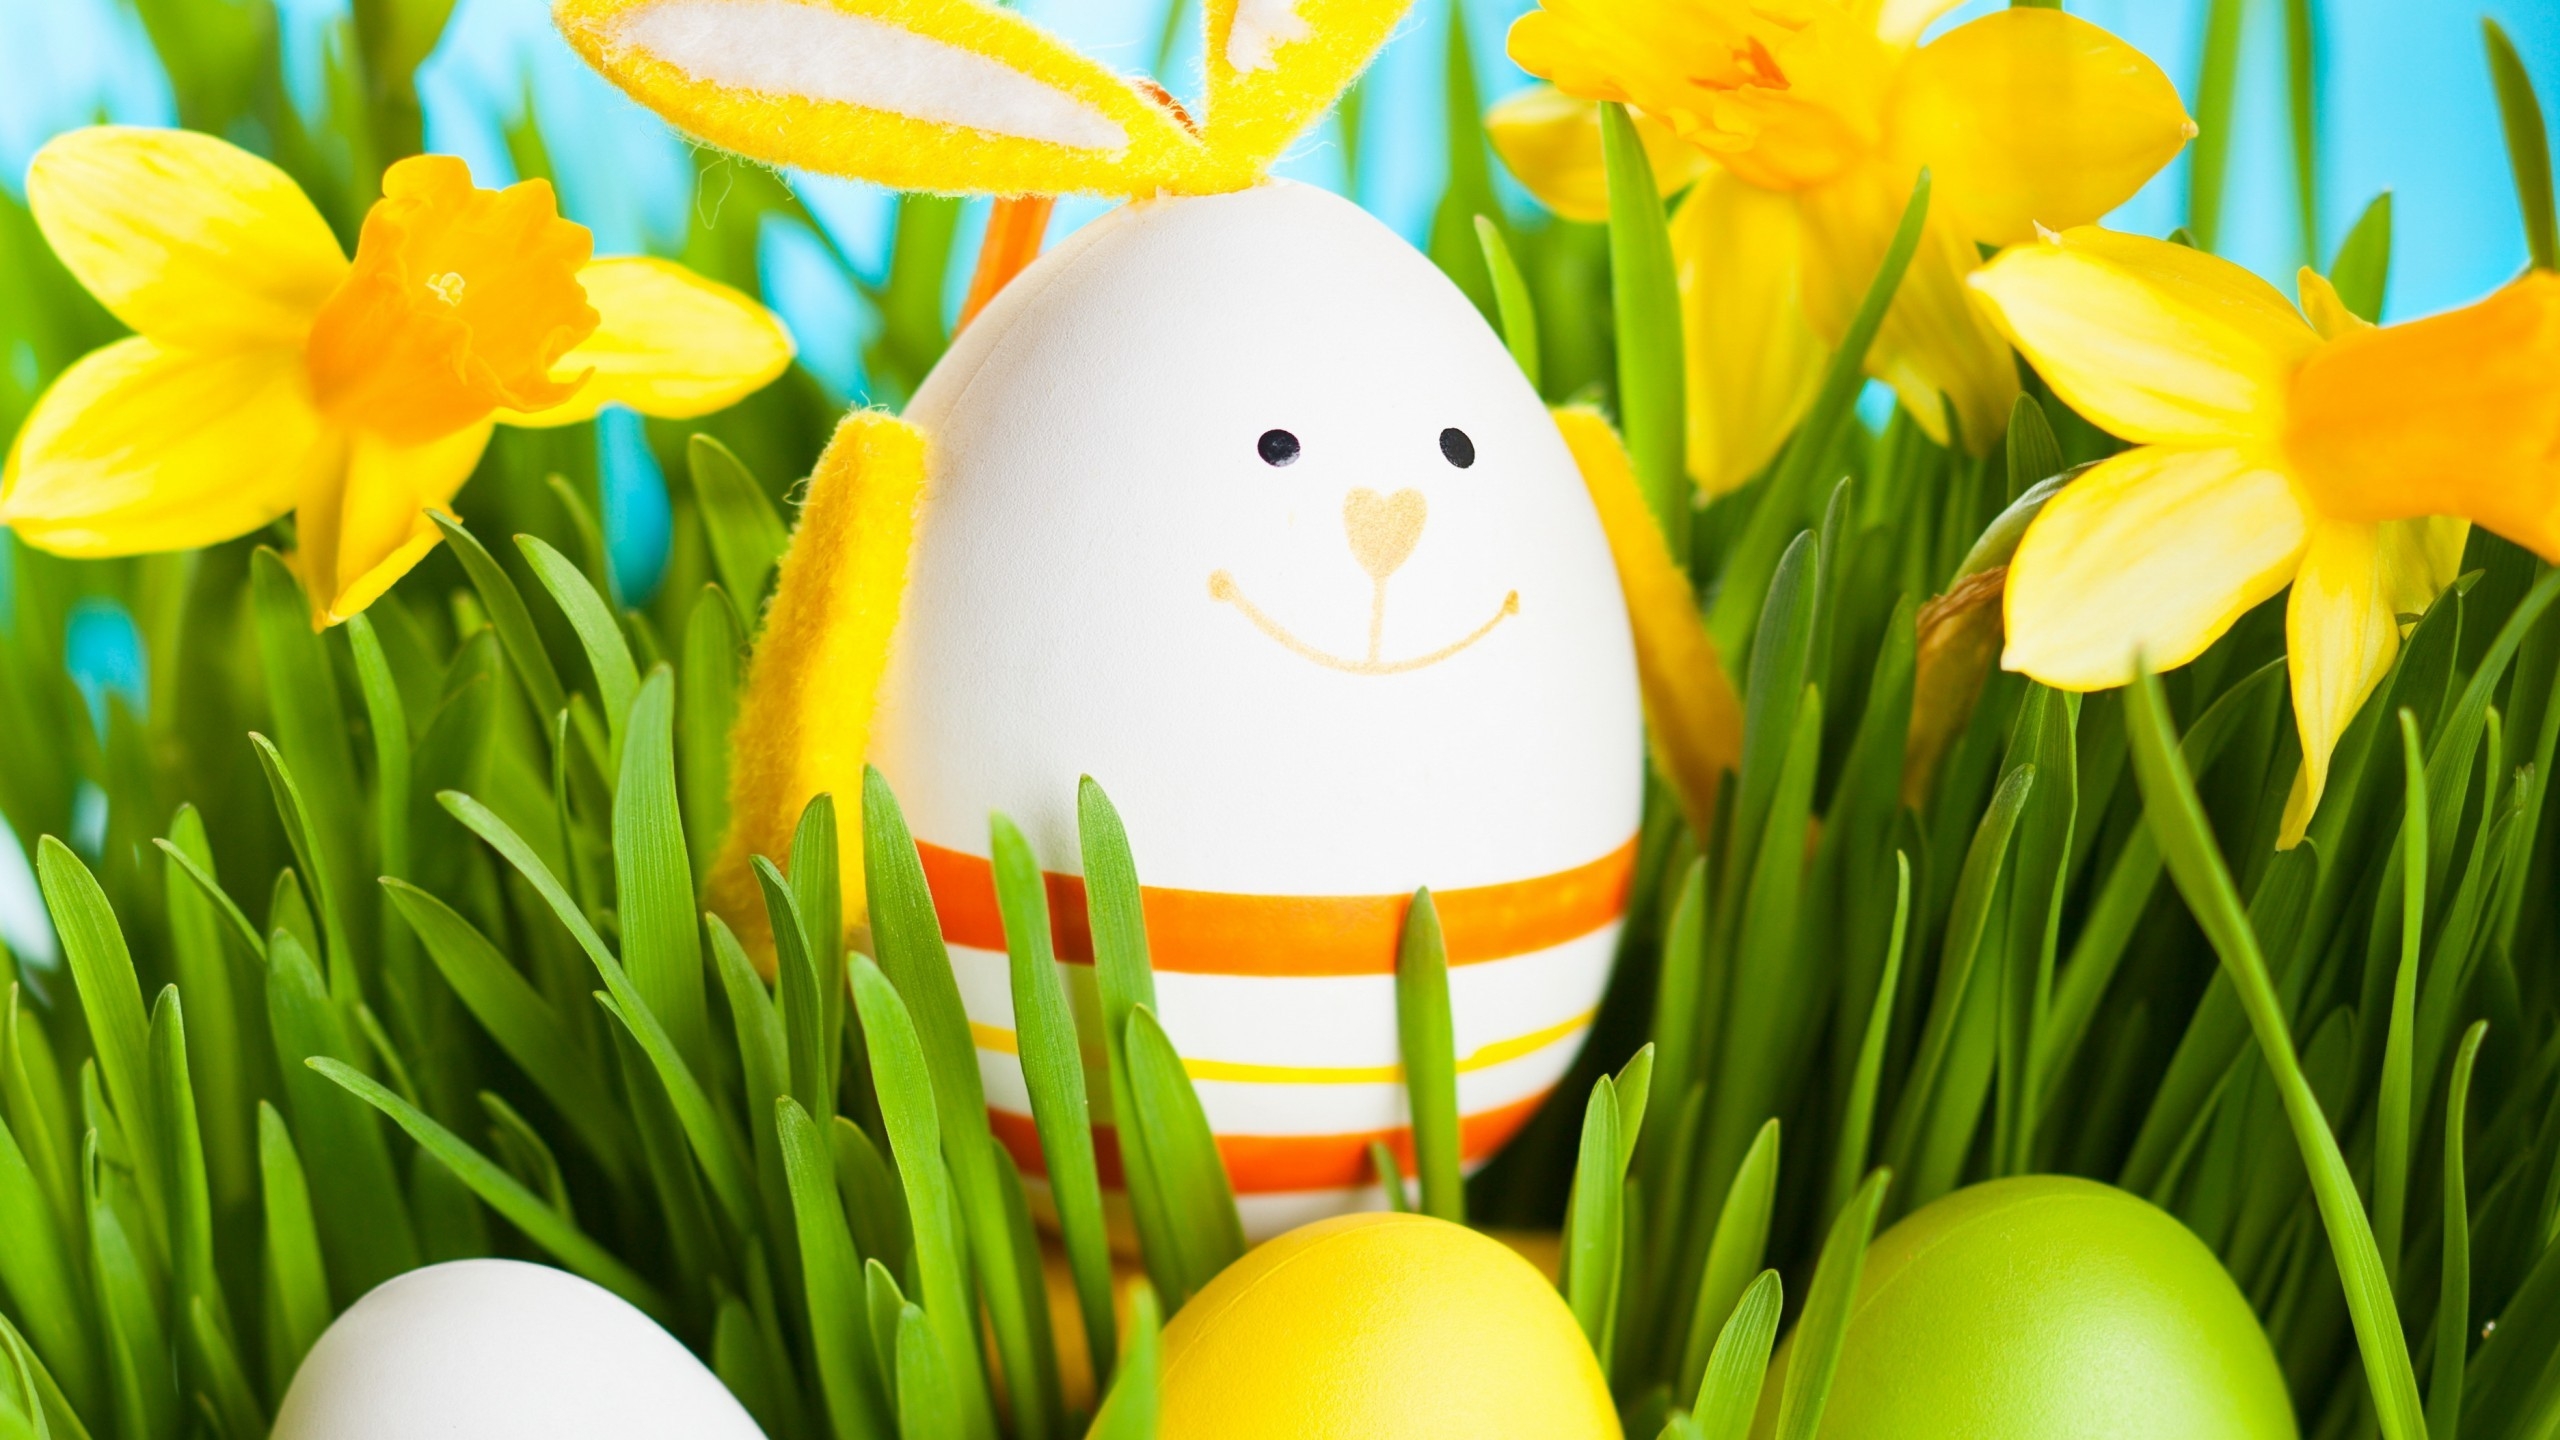 2014 Smiling Easter Egg for 2560x1440 HDTV resolution